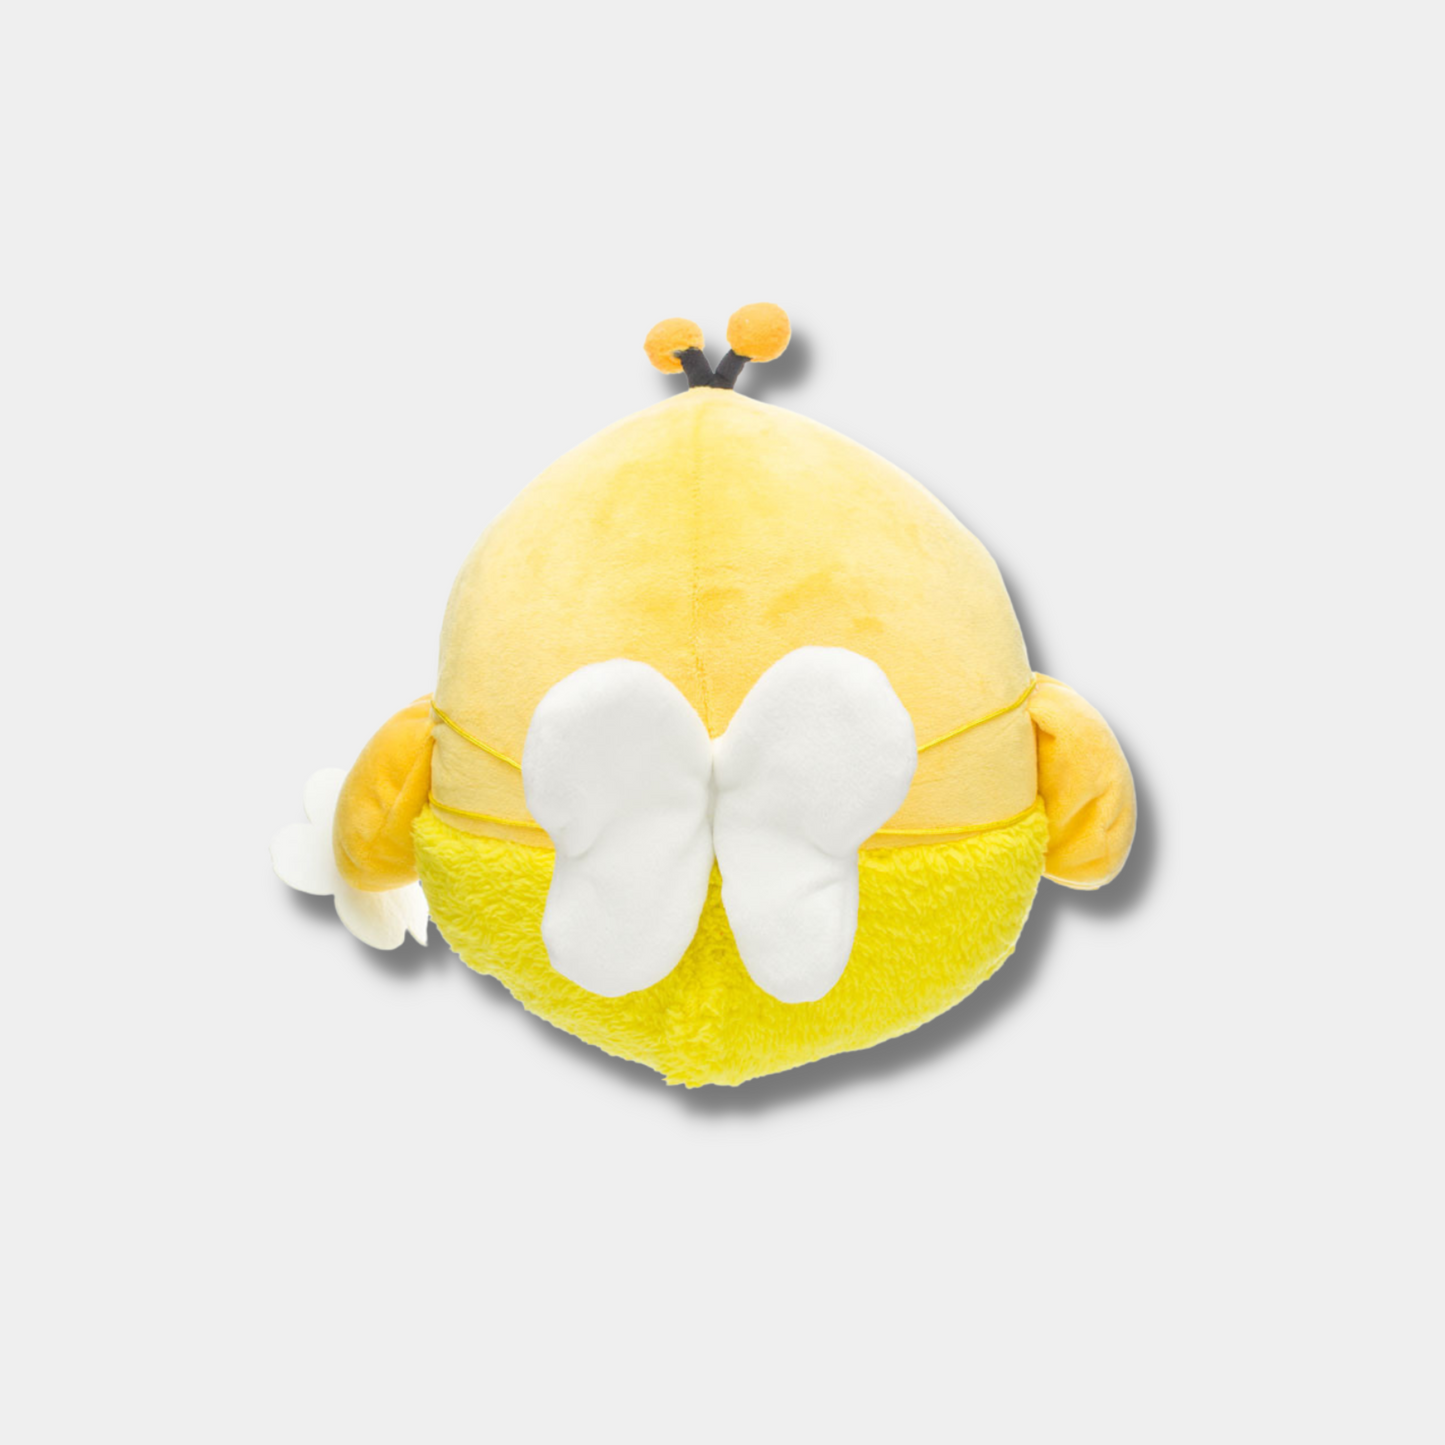 Kiiroitori Dresses As a Lemon